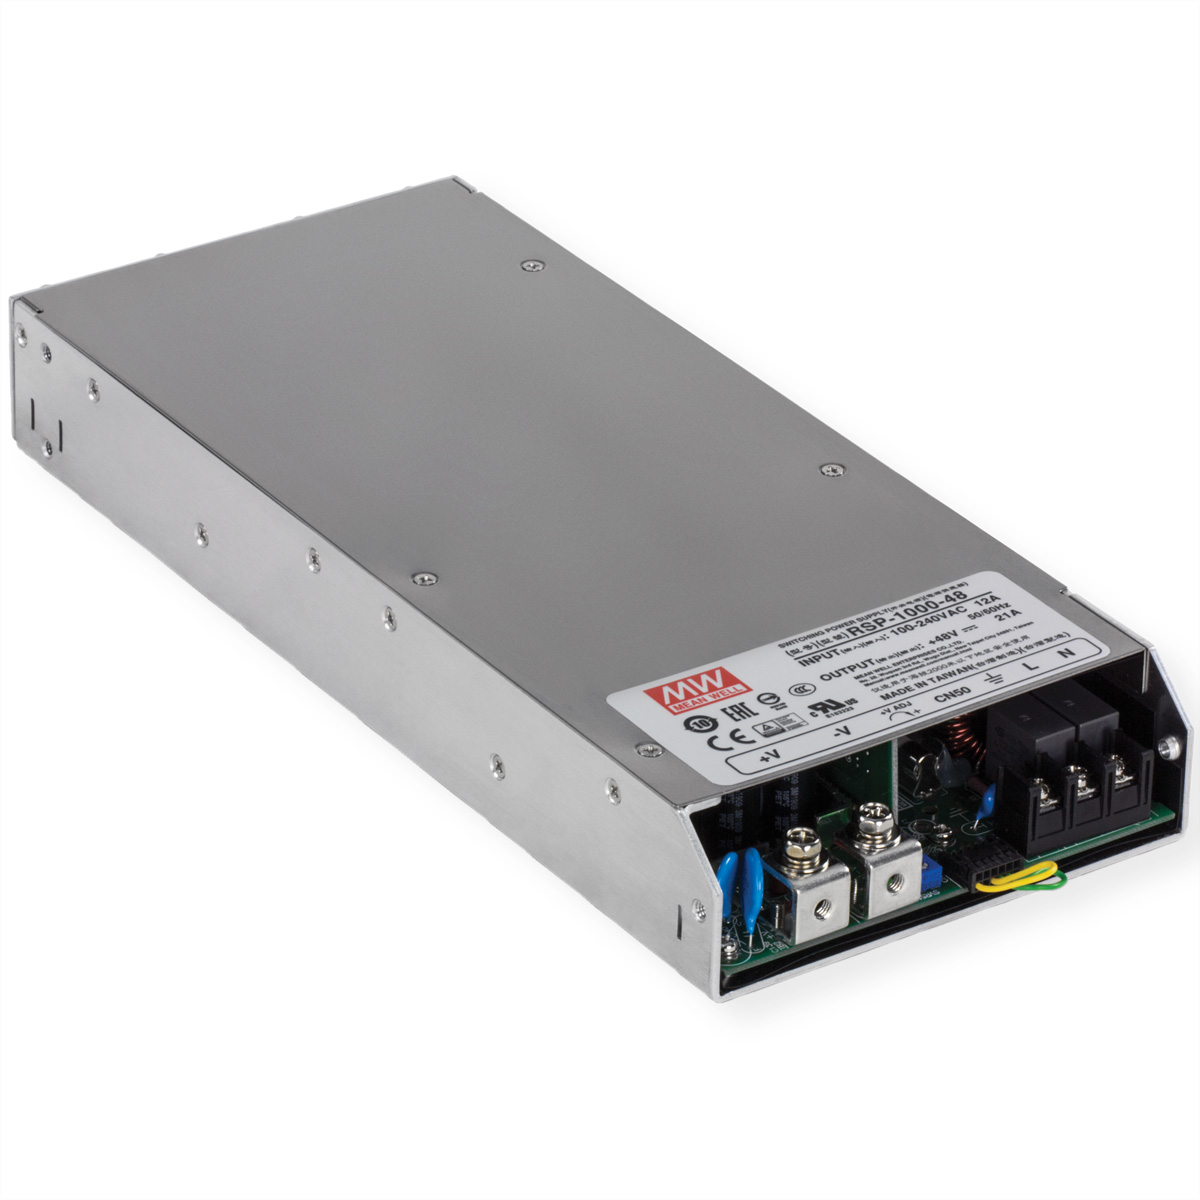 TRENDNET TI-RSP100048 - Netzteil (Rack - einbaufähig) - Wechselstrom 100-240 V - 1000 Watt - aktive